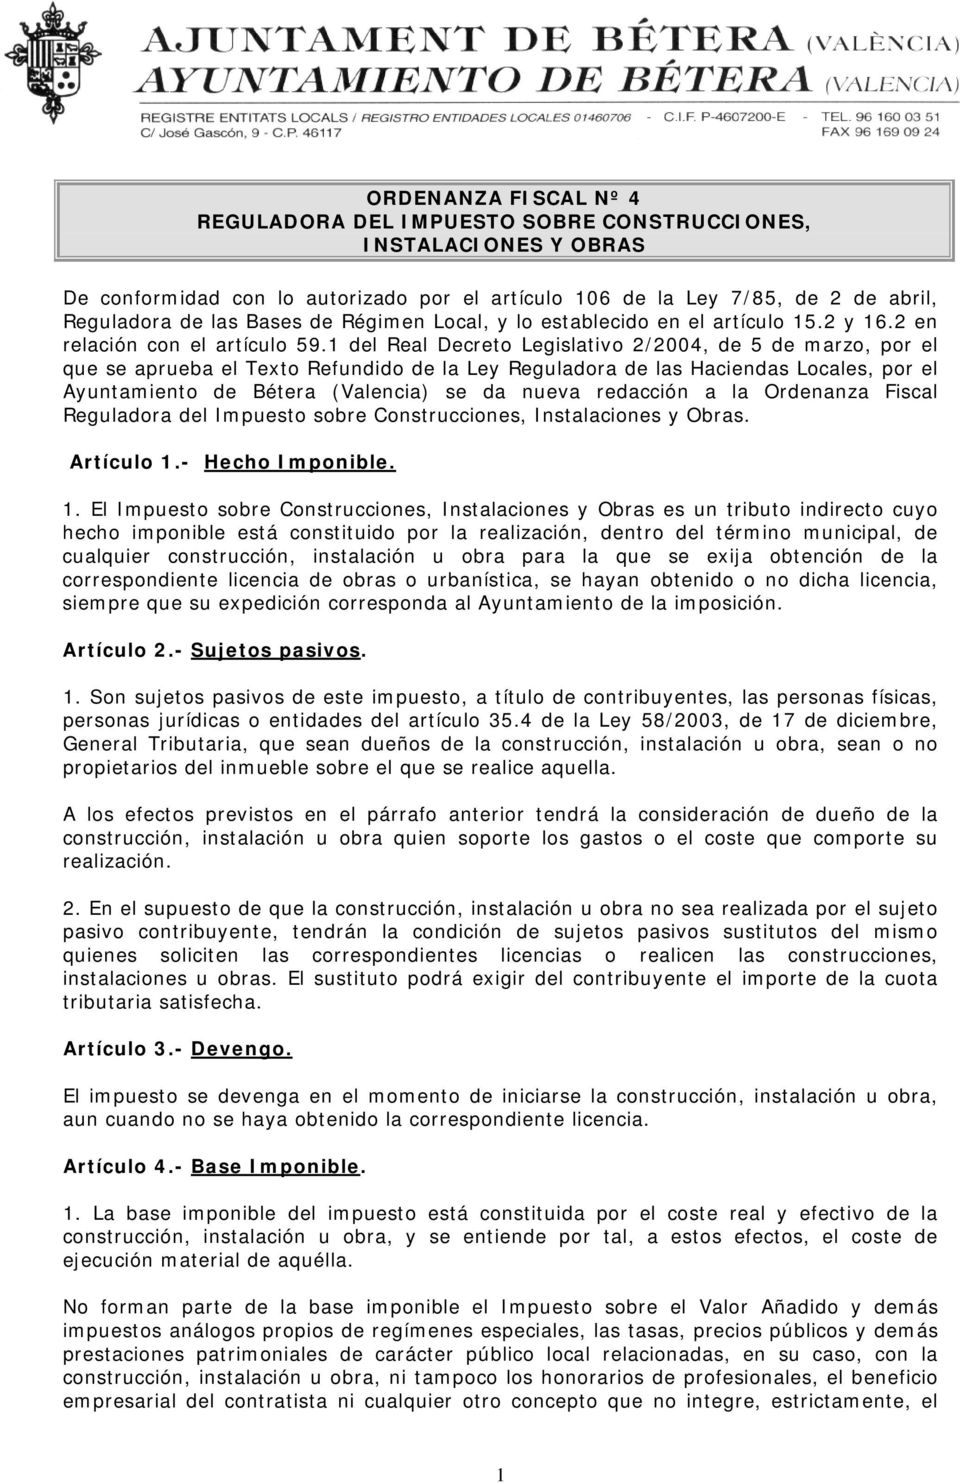 1 del Real Decreto Legislativo 2/2004, de 5 de marzo, por el que se aprueba el Texto Refundido de la Ley Reguladora de las Haciendas Locales, por el Ayuntamiento de Bétera (Valencia) se da nueva